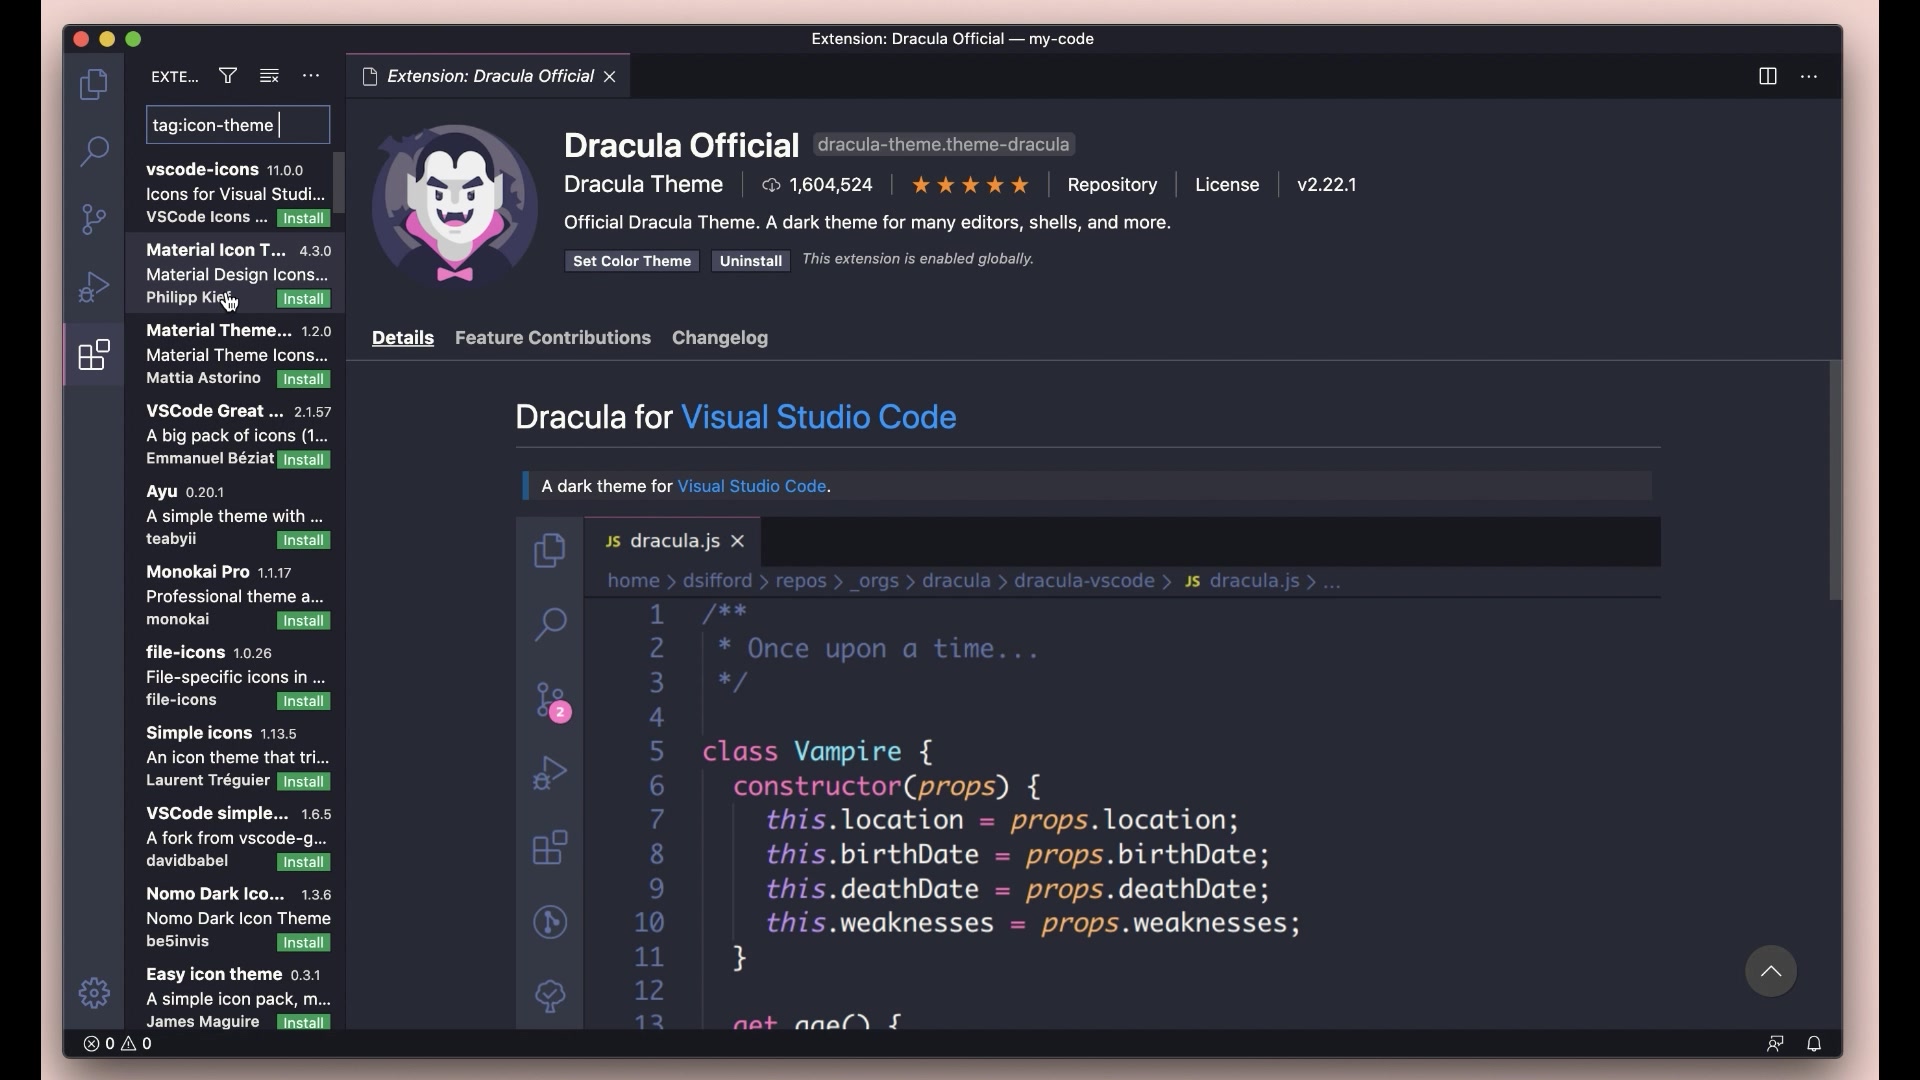 Visual Studio Code là một công cụ rất tiện dụng, nhưng bạn chưa thật sự cảm thấy thoải mái khi sử dụng? Hãy tùy chỉnh nó để phù hợp với sở thích của mình và trải nghiệm tốt nhất!